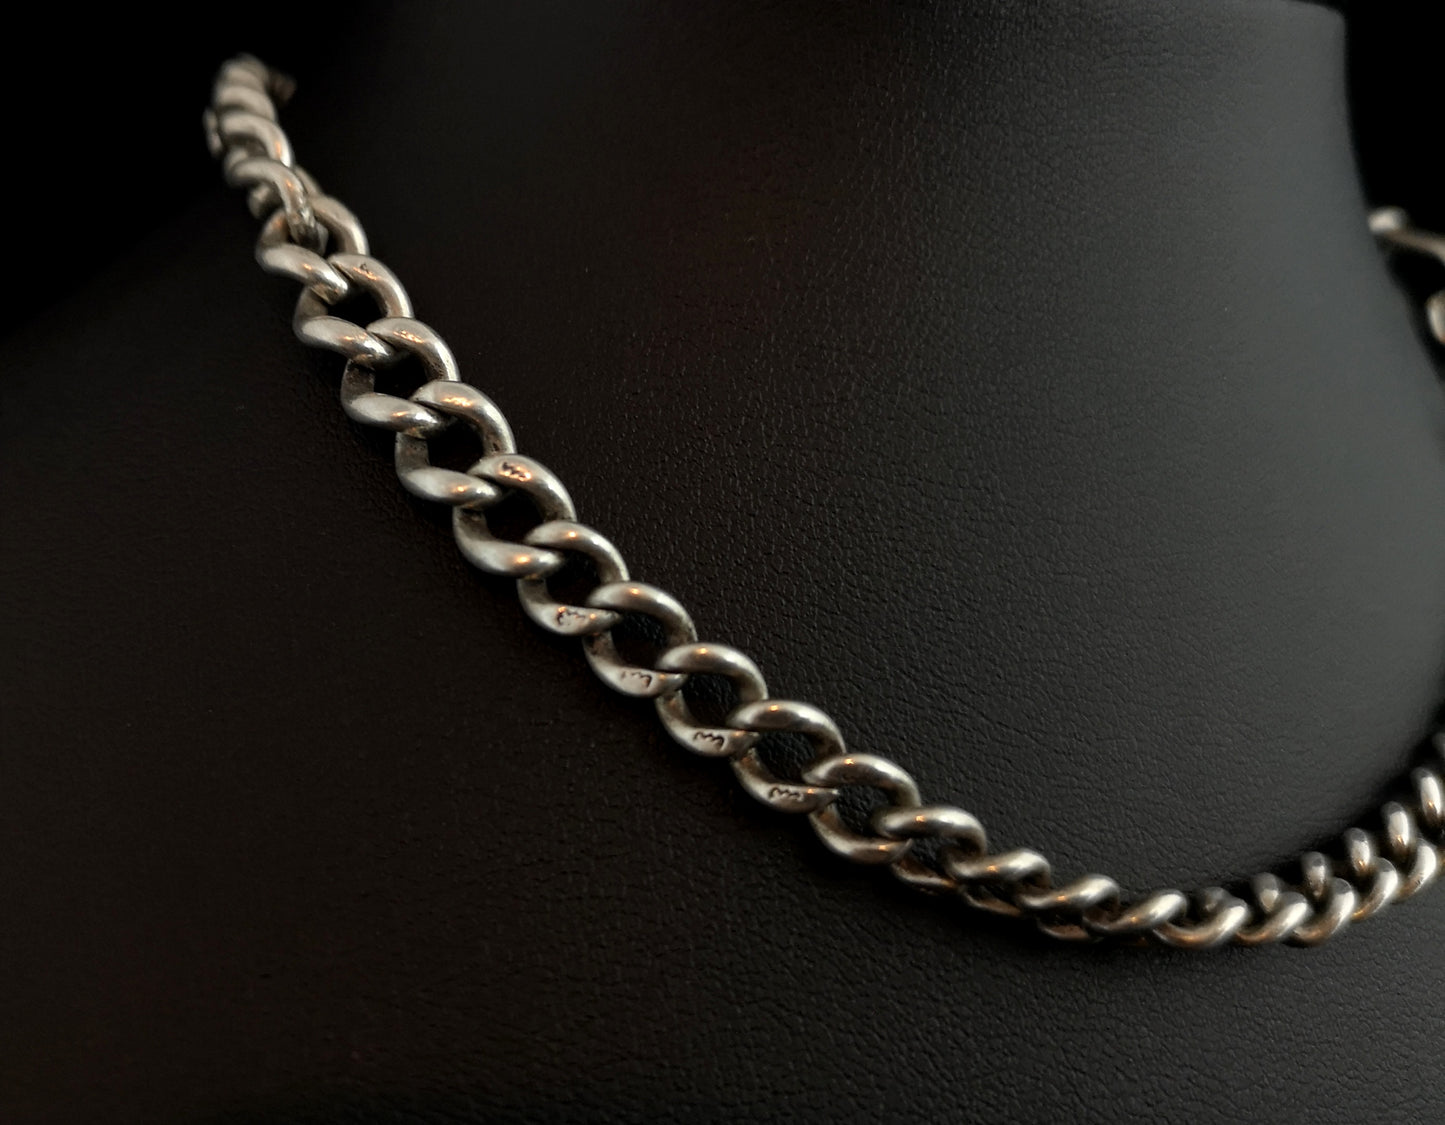 Antique silver albert chain, watch chain